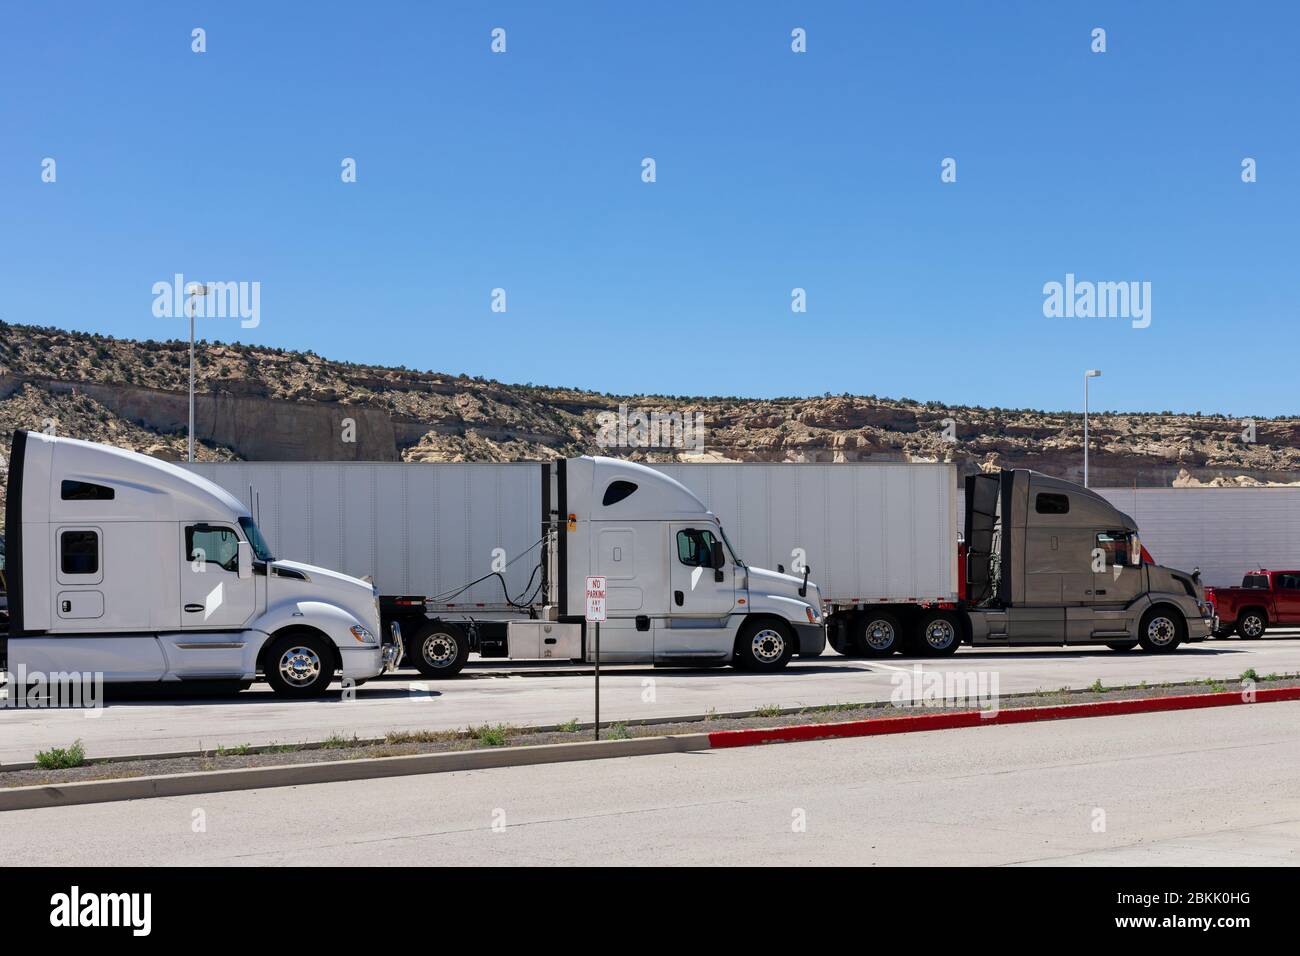 Drei große Rigs Semi-Trucks verschiedener Marken-Modelle sind in Parkplätzen LKW-Haltestellen oder Rastplätze Füllung leerstehende Plätze zum Ausruhen haben Mittagessen aufgereiht Stockfoto